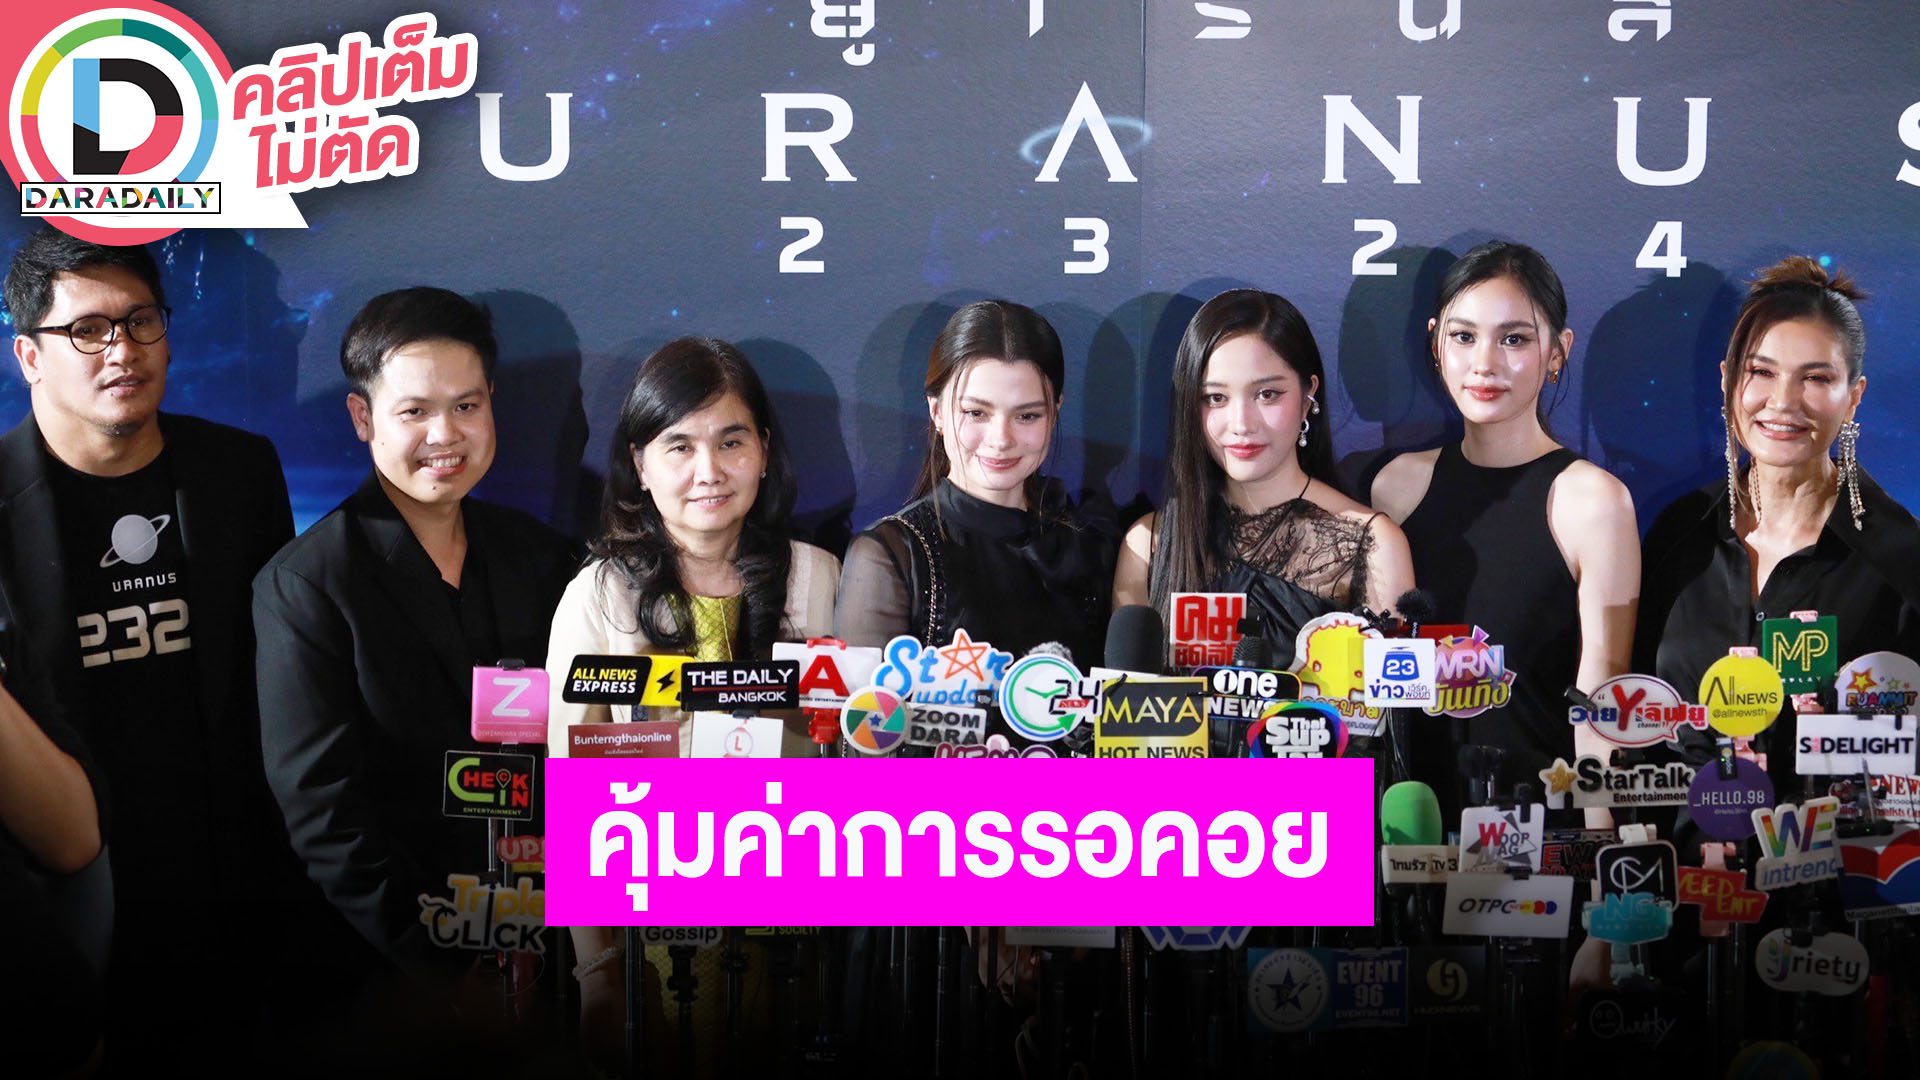 “ฟรีน-เบ็คกี้” นำทีมนักแสดงชวนดูหนังไทยคุณภาพ “URANUS2324”